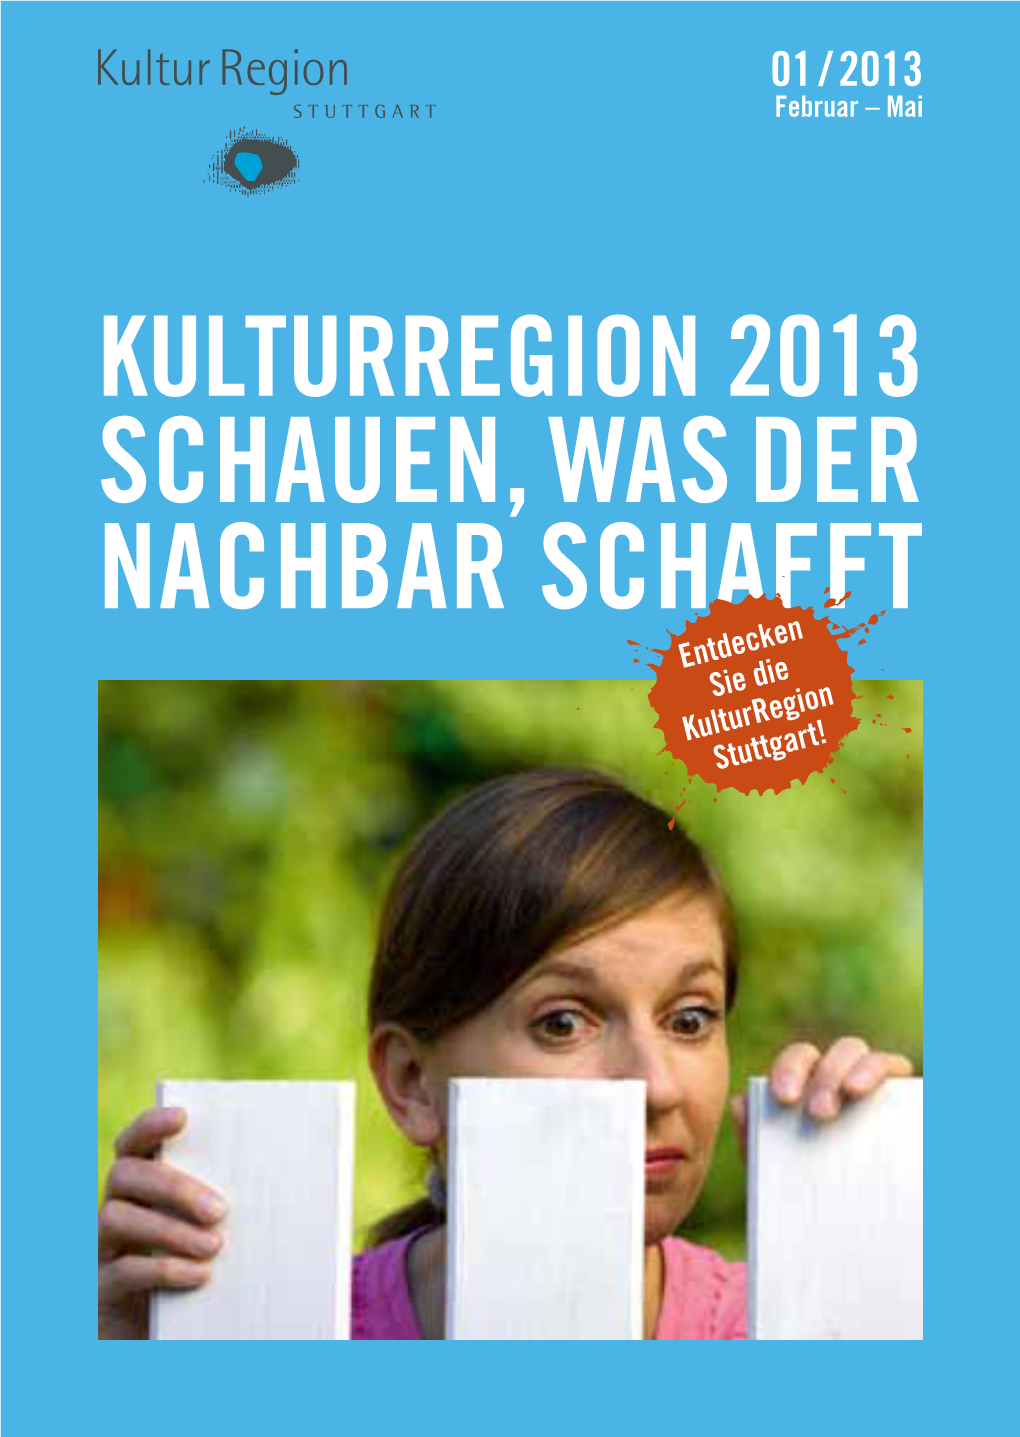 Schauen, Was Der Nachbar Schafft Entdecken Sie Die Kulturregion Stuttgart! Kulturregion 2013 /// ////// // Schauen, Was Der Nachbar Schafft